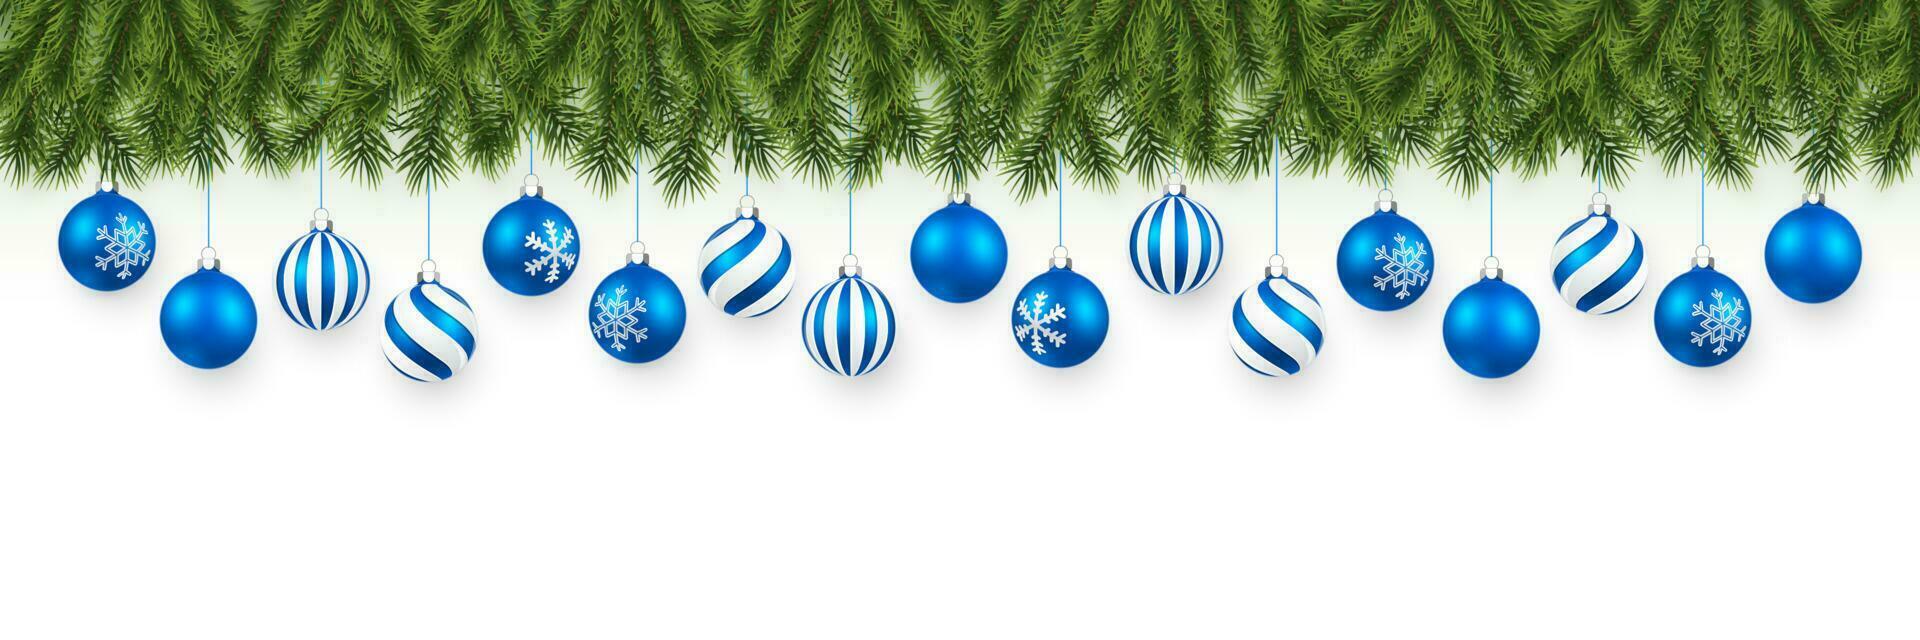 festlich Weihnachten oder Neu Jahr Girlande. Weihnachten Baum Geäst. Feiertage Hintergrund. Vektor Illustration